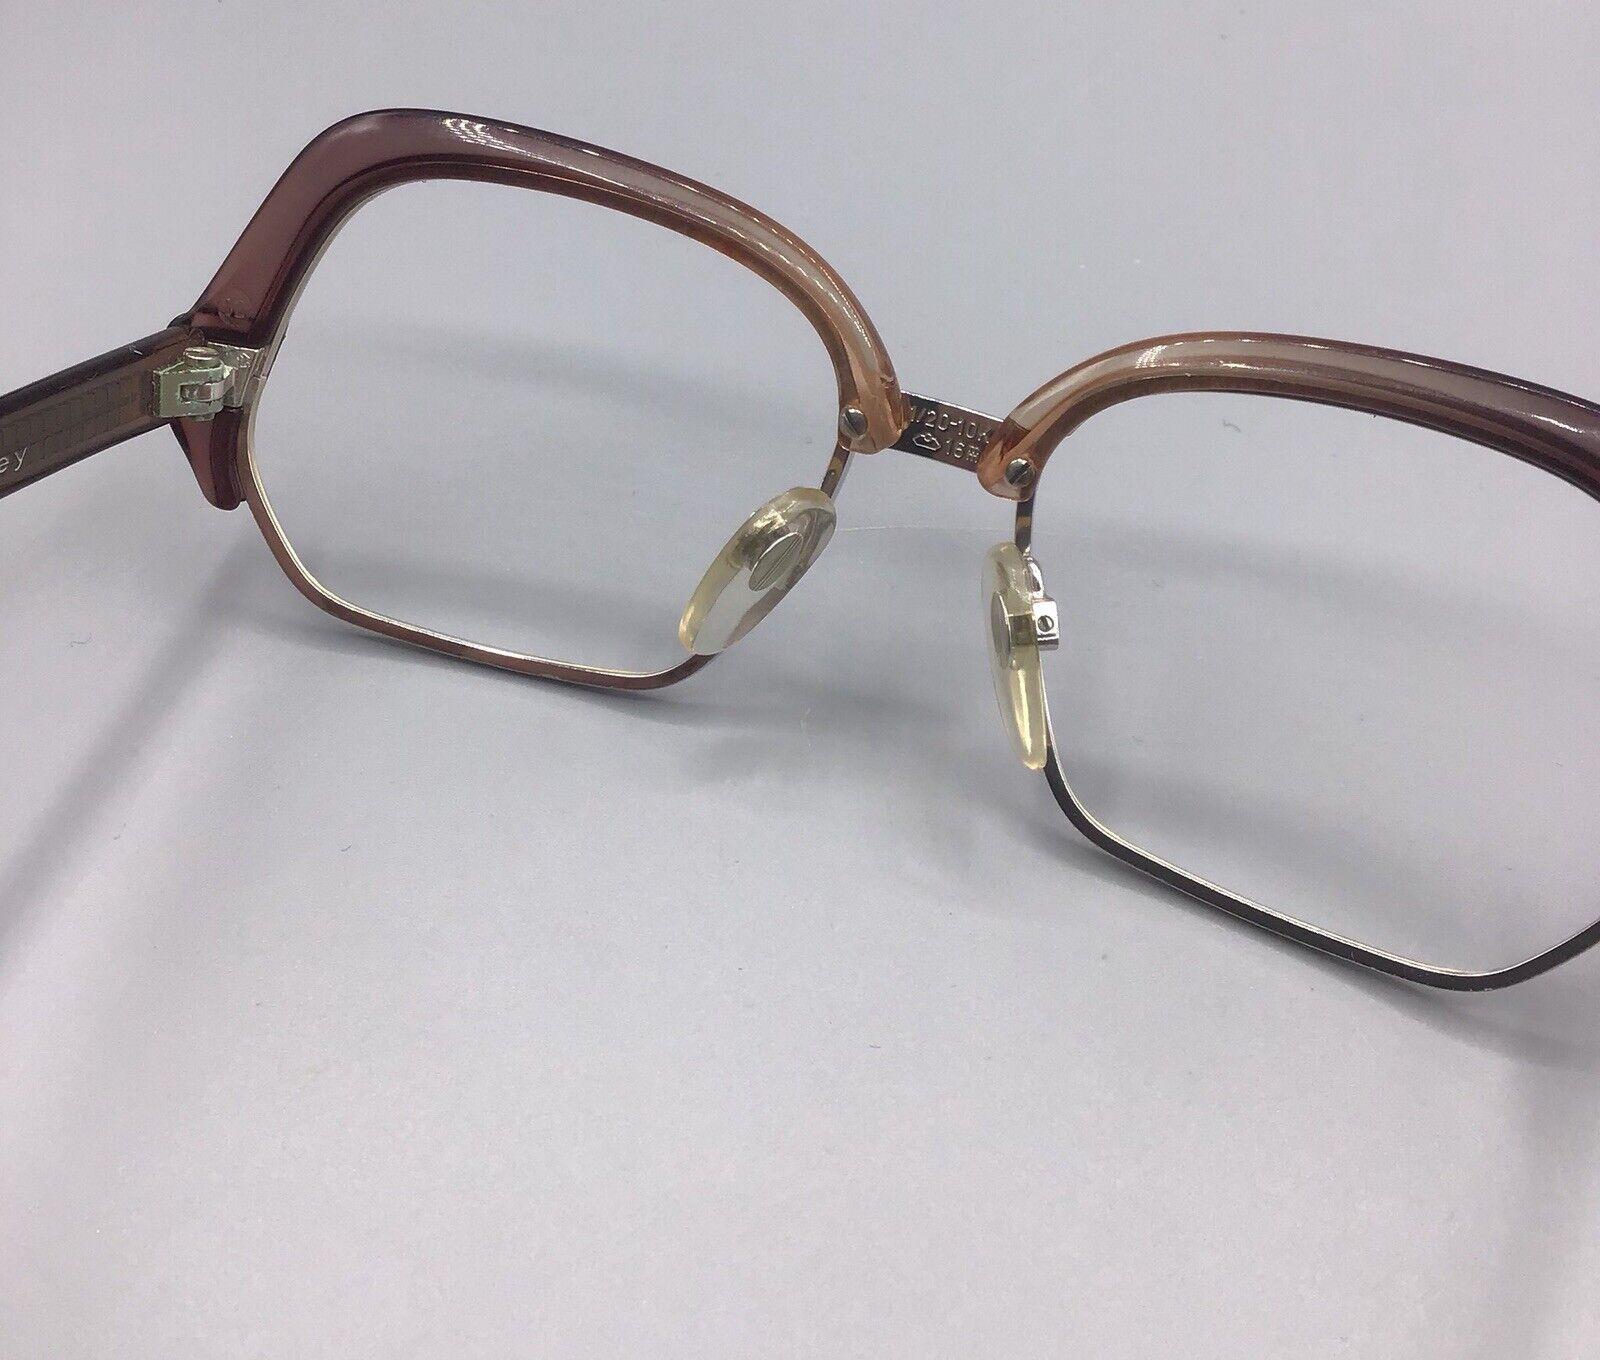 Rodenstock occhiale vintage Eyewear frame brillen coralle wd grey 1/20 10k